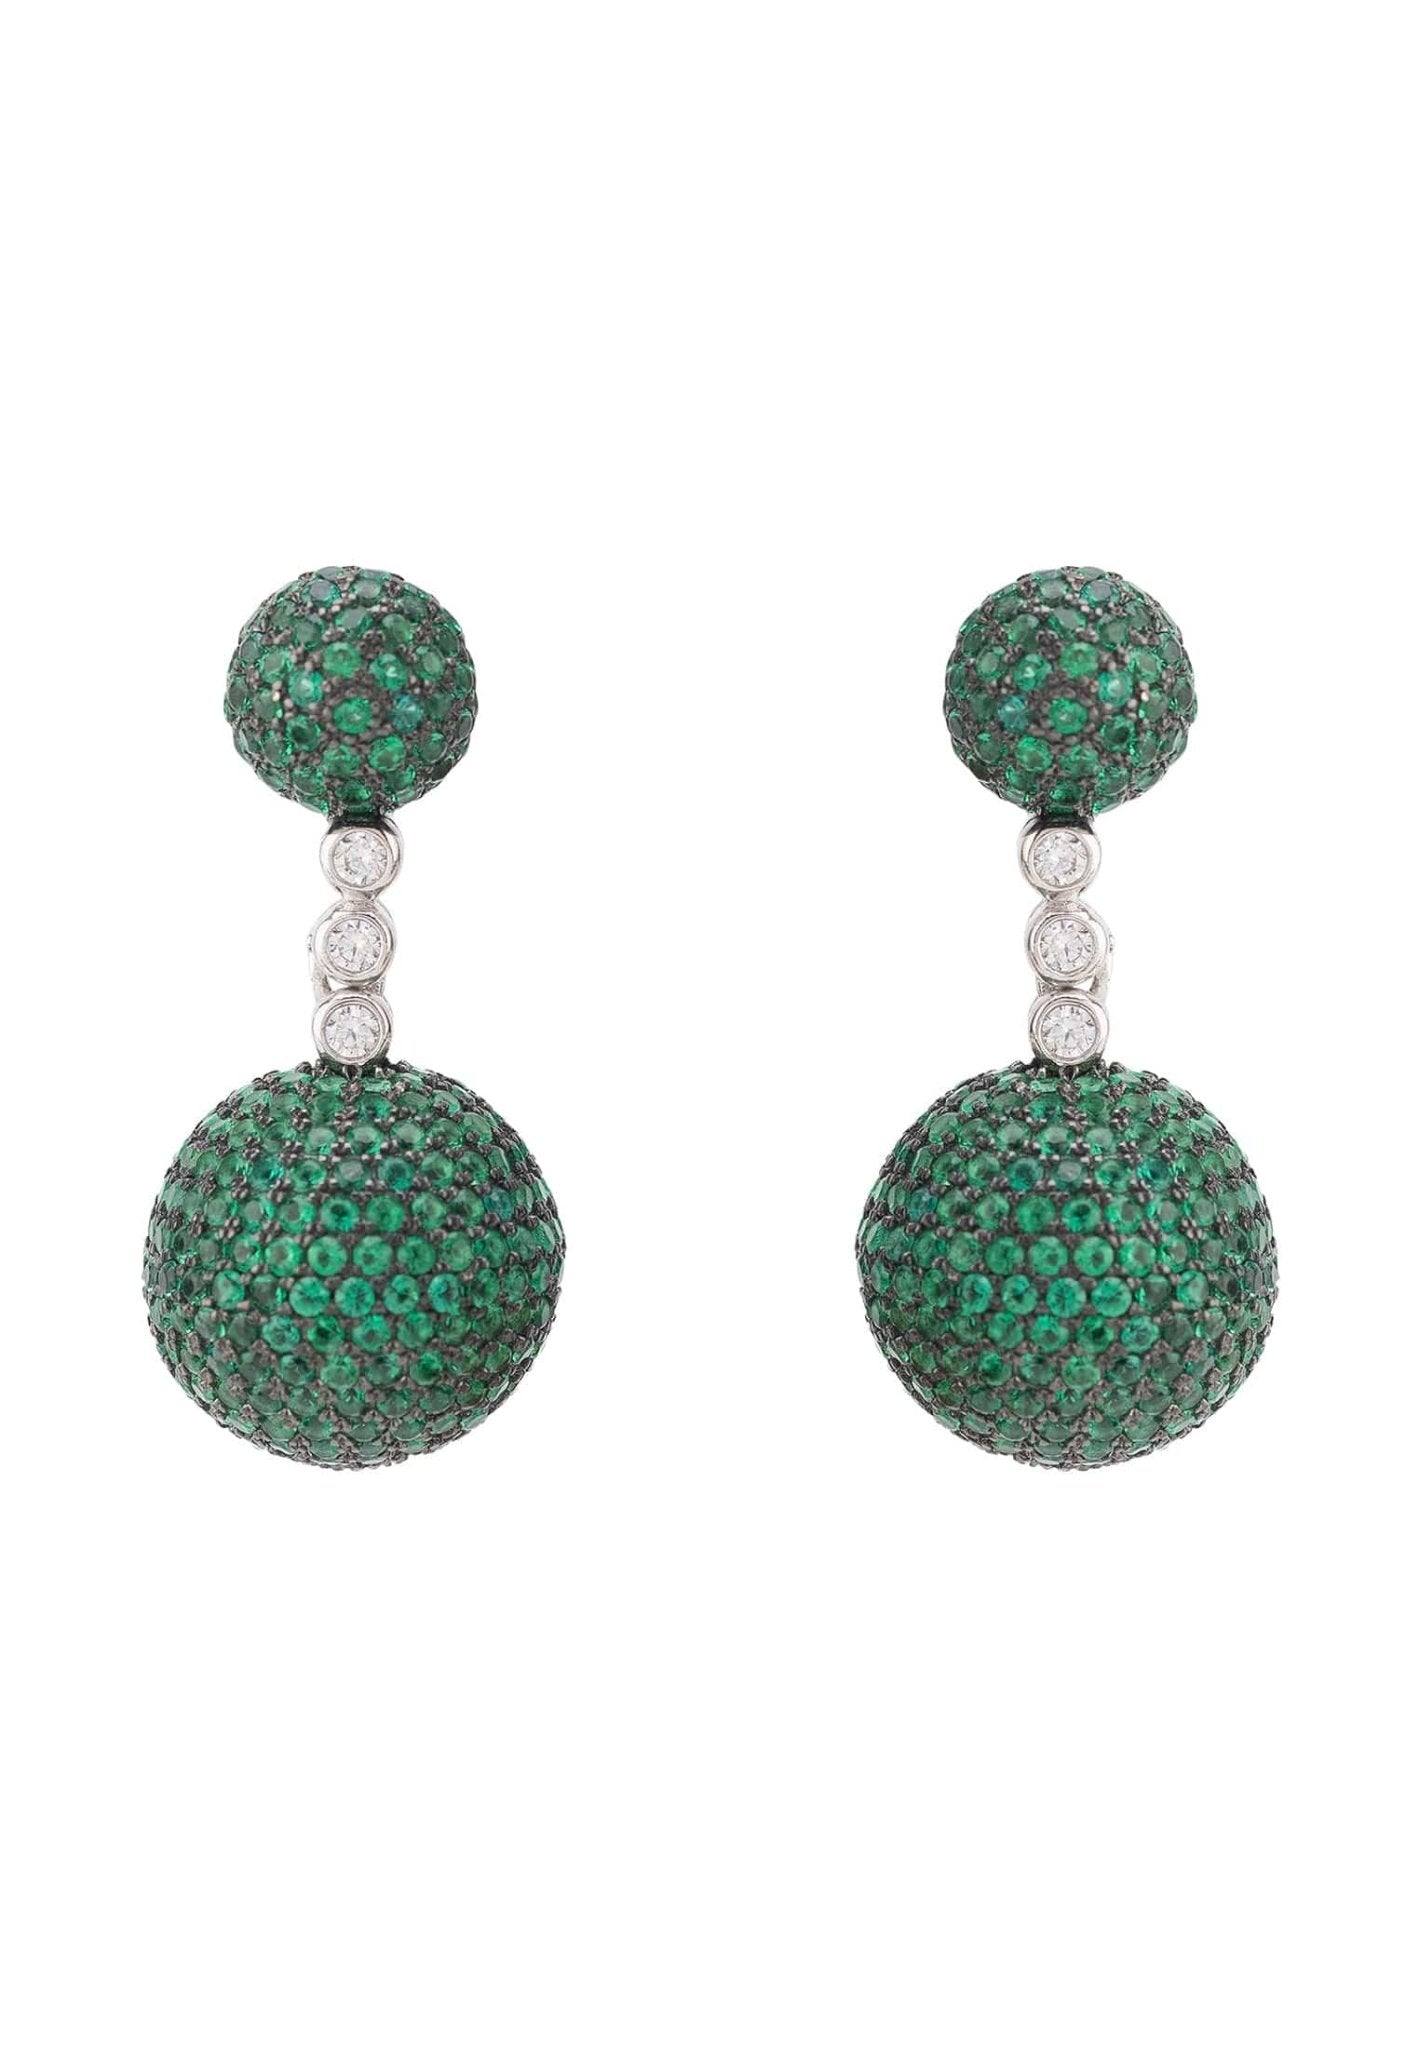 Monaco Sphere Drop Earrings Silver Emerald Green Cz - LATELITA Earrings